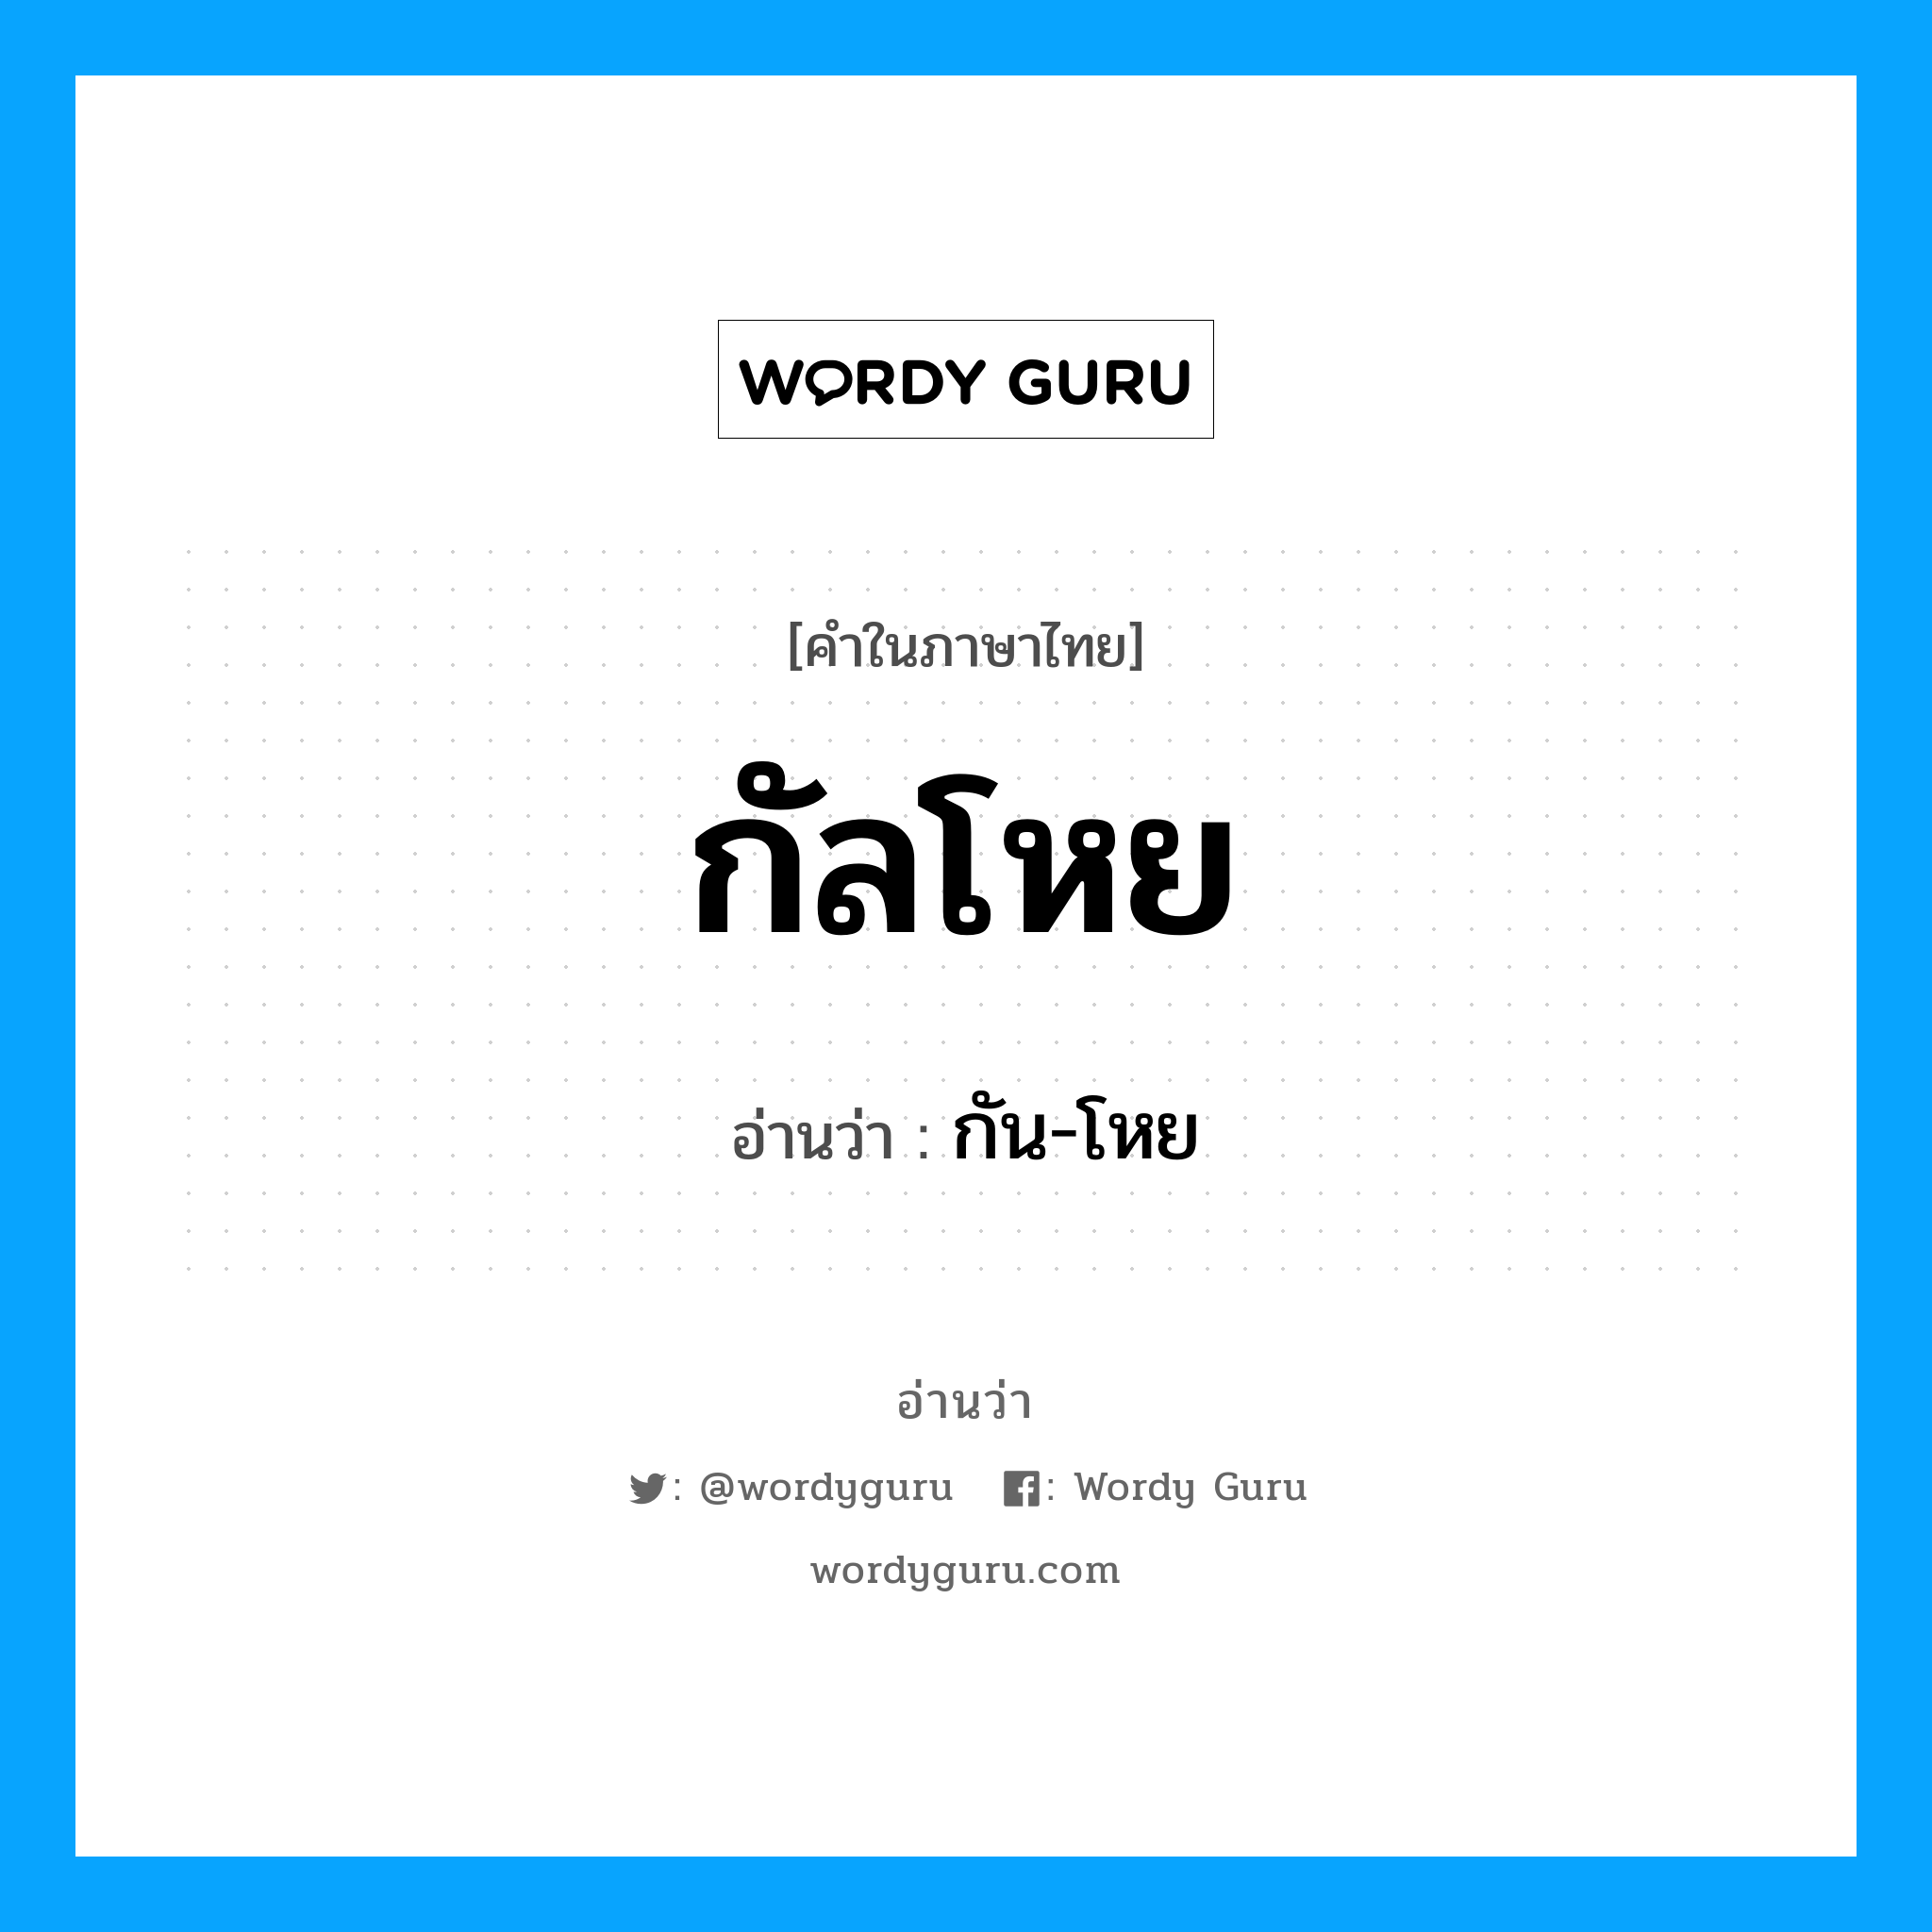 กัน-โหย เป็นคำอ่านของคำไหน?, คำในภาษาไทย กัน-โหย อ่านว่า กัลโหย